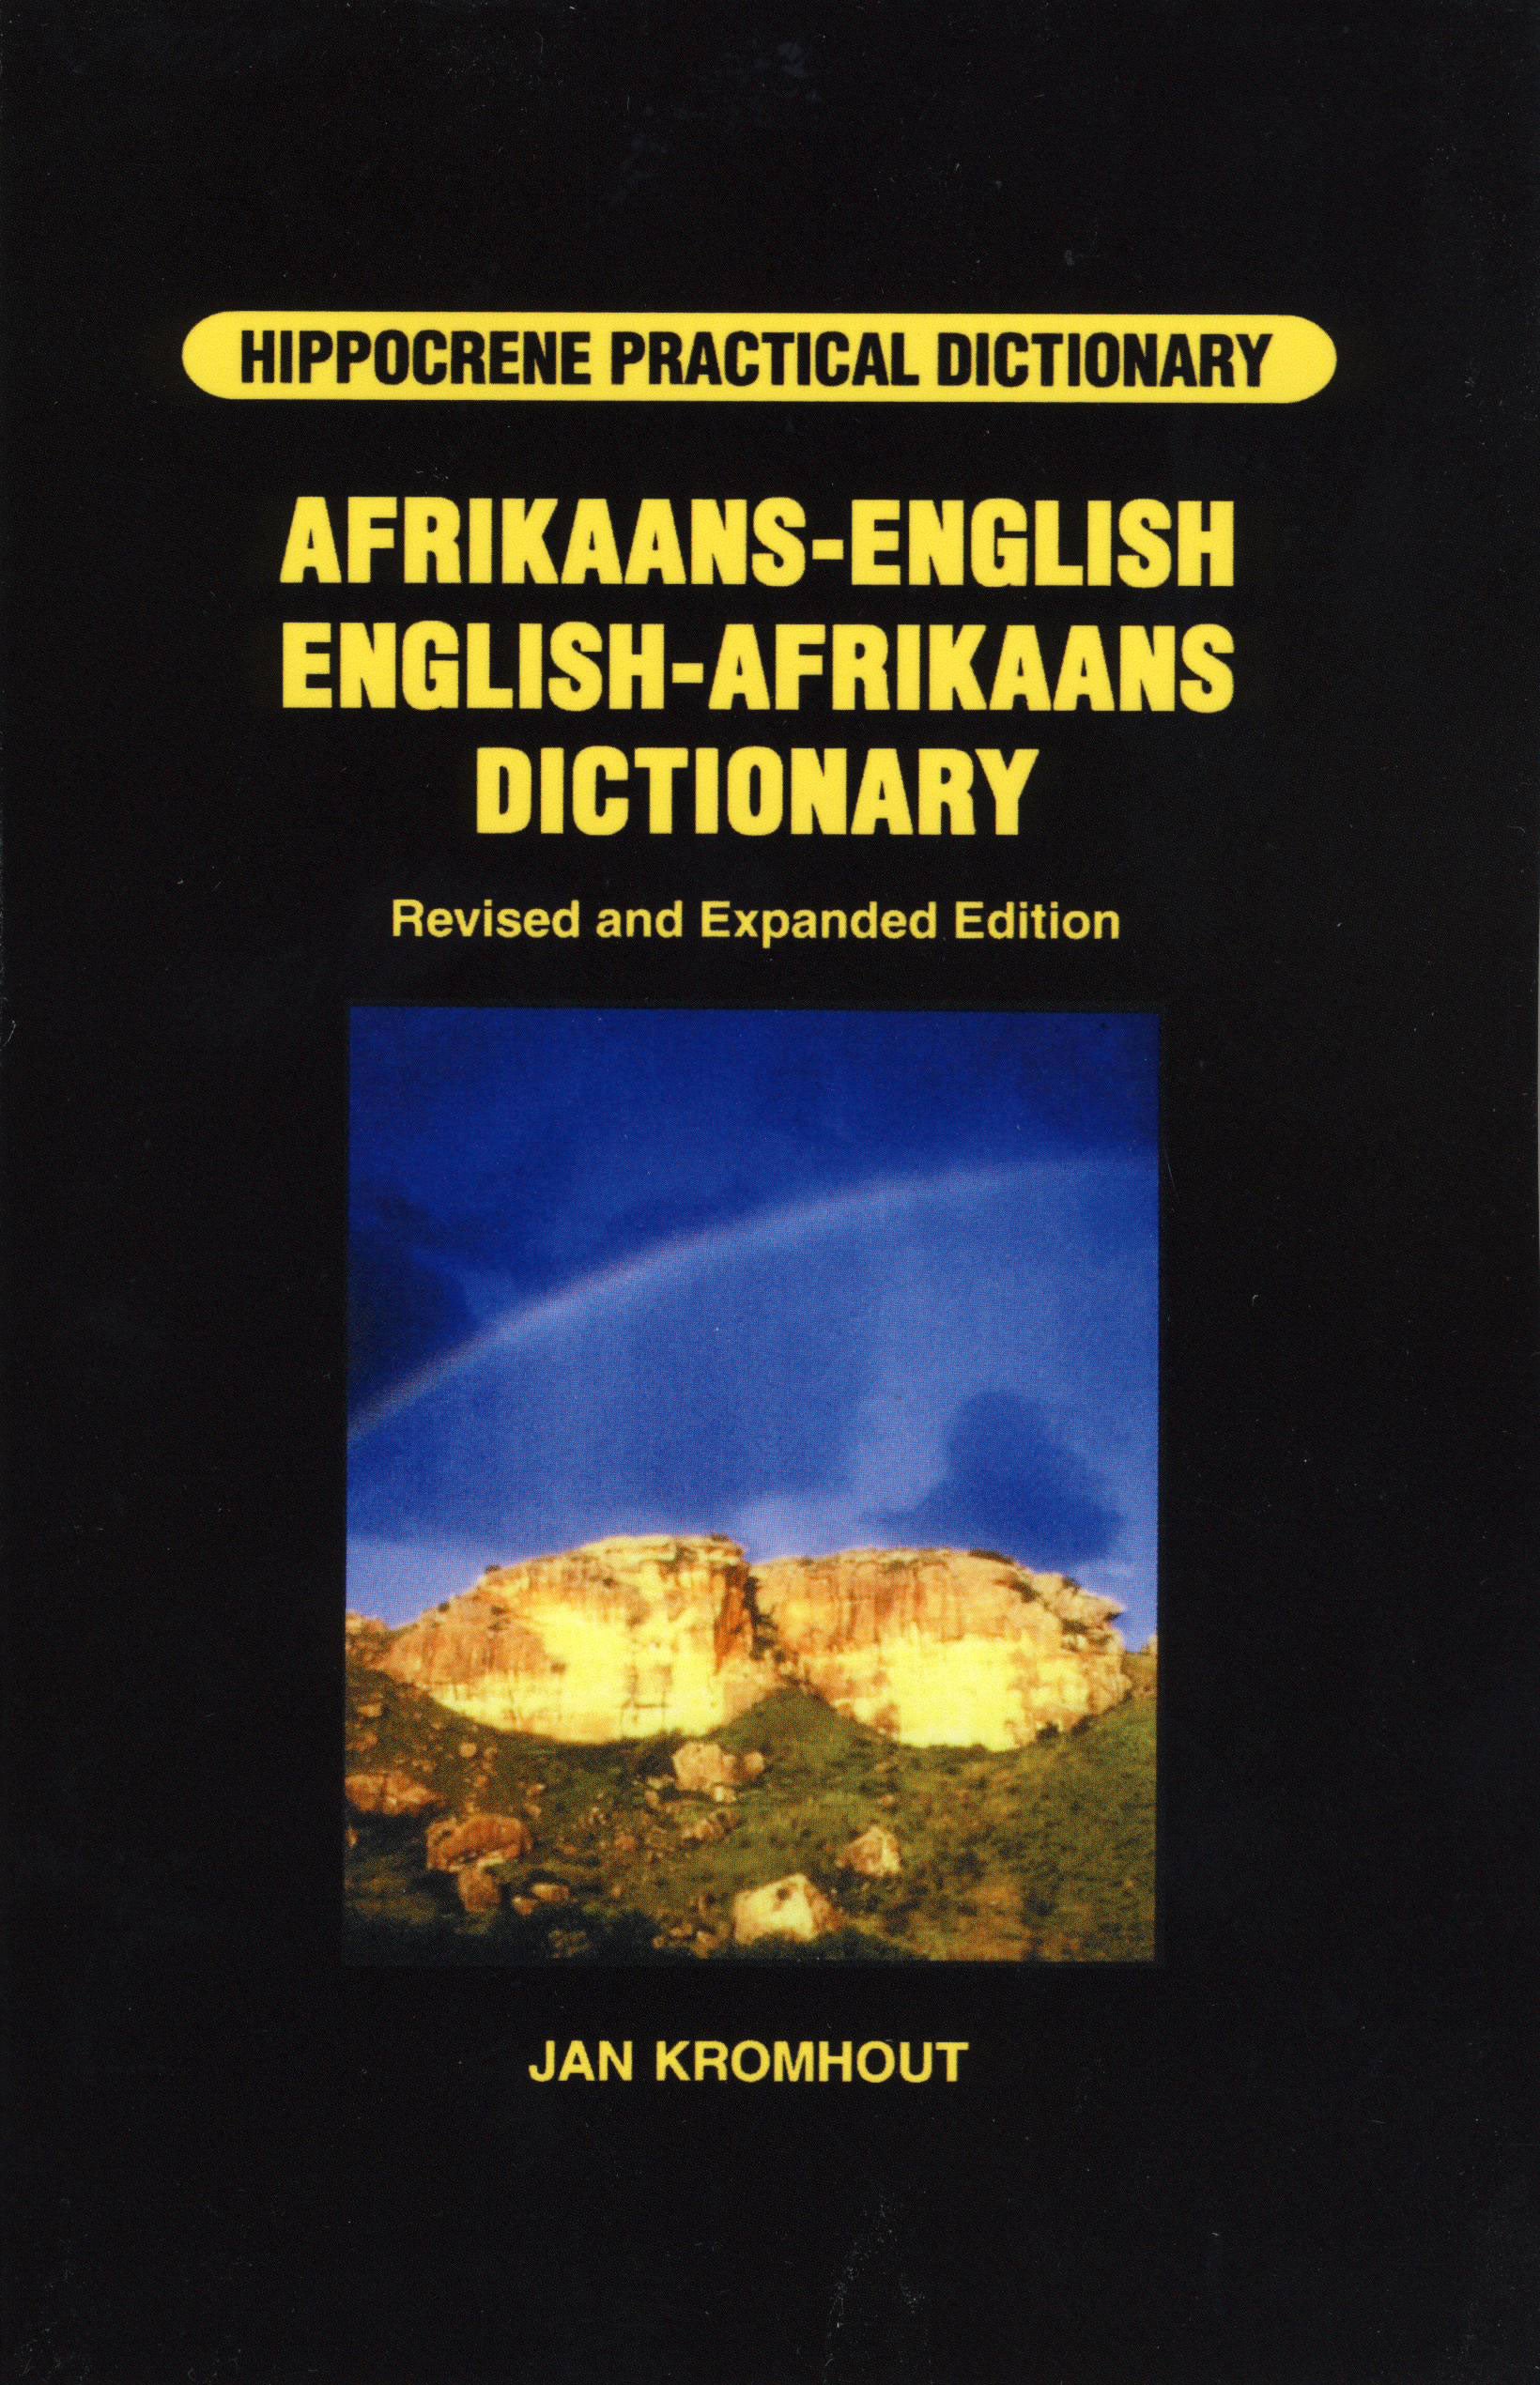 Afrikaans- English / English-Afrikaans Hipp Practical Dictionary